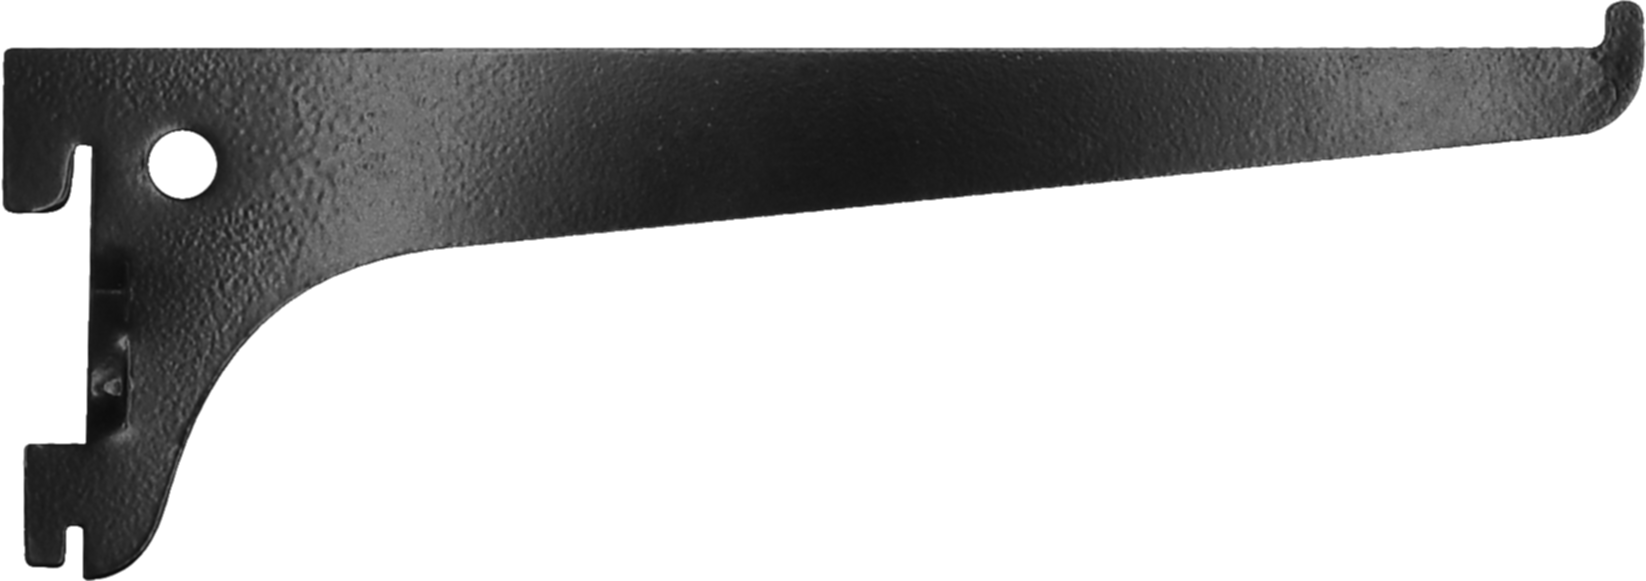 Console simple acier noir 20 cm entraxe 50 mm - CIME